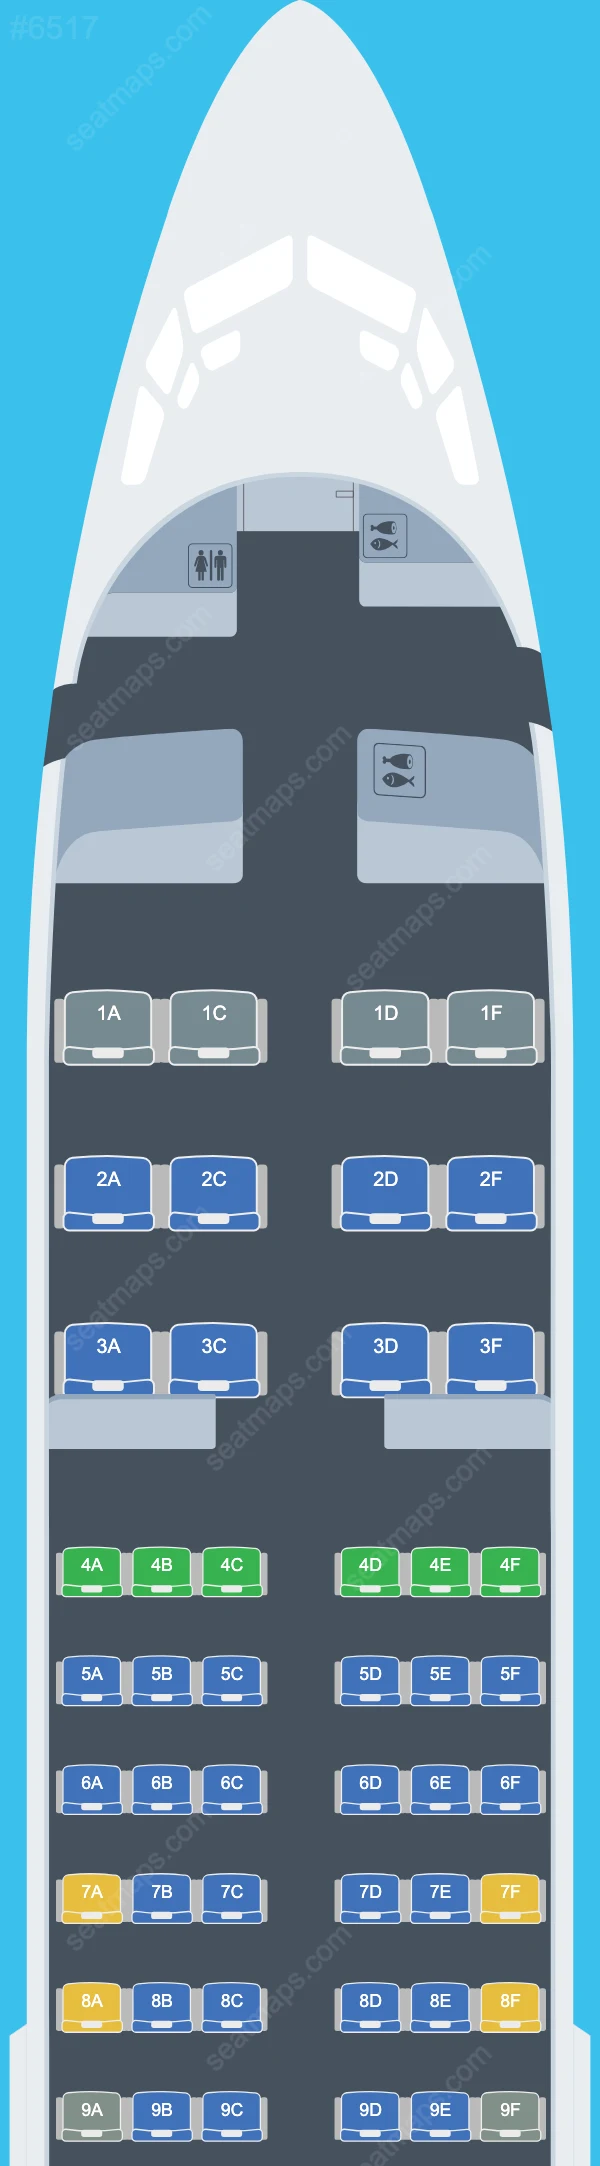 iAero Airways Boeing 737 Plan de Salle 737-400 V.1